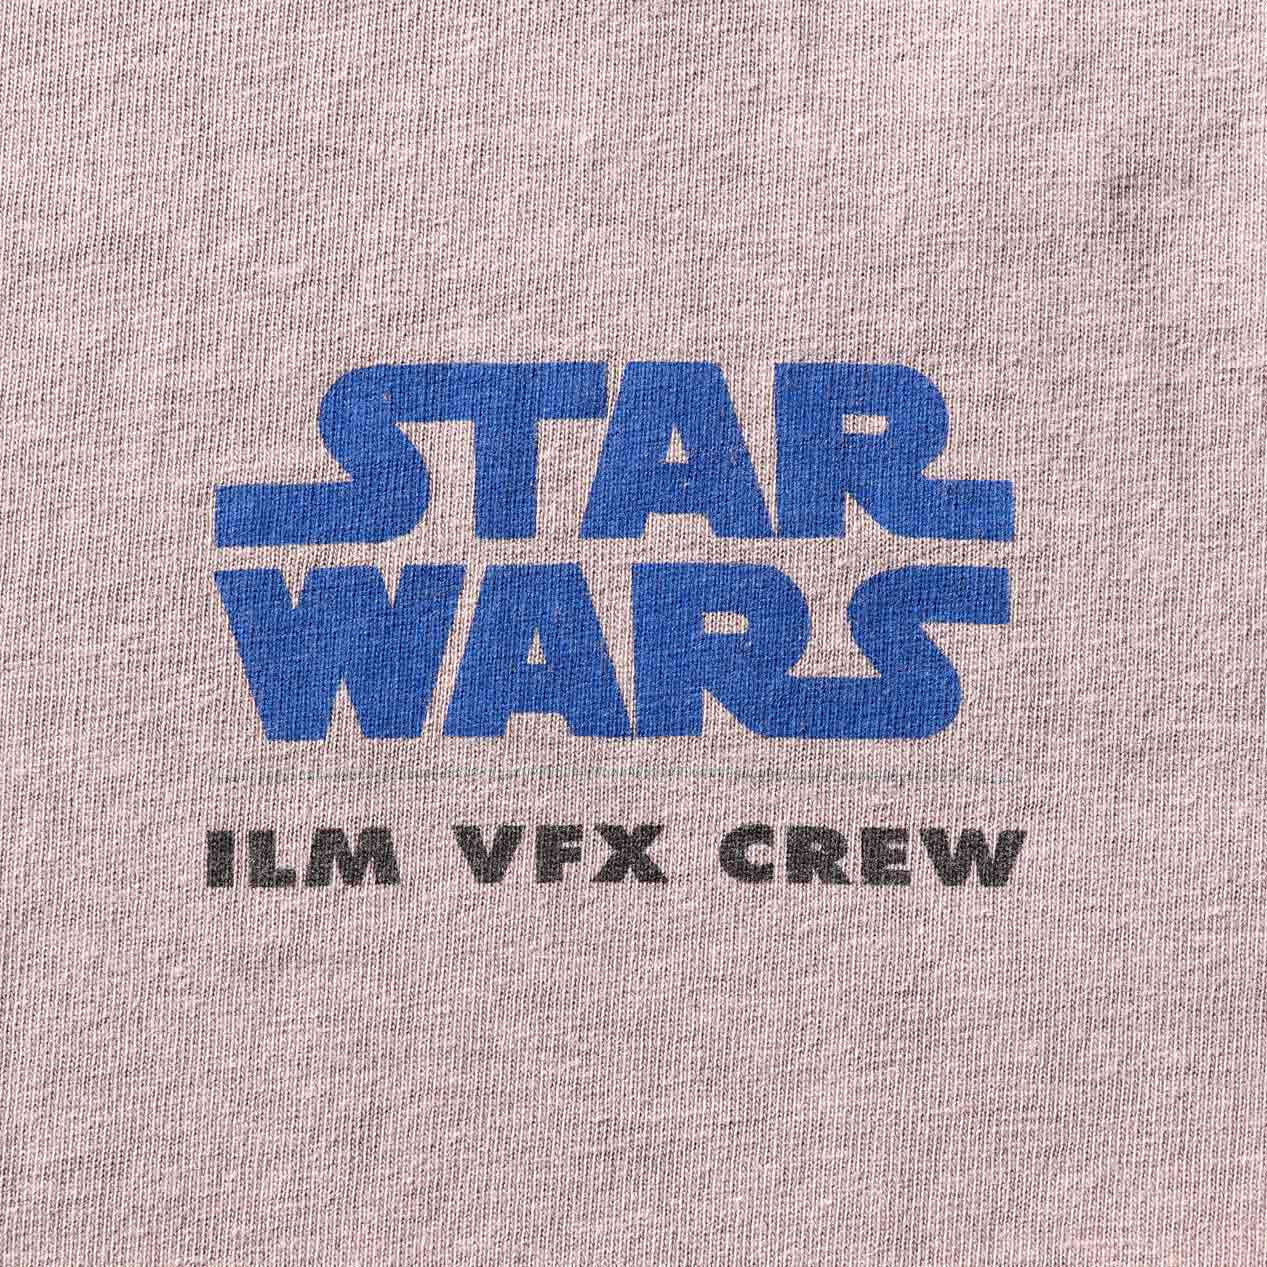 【激レア】STAR WARS ILM VFX CREW T-SHIRT